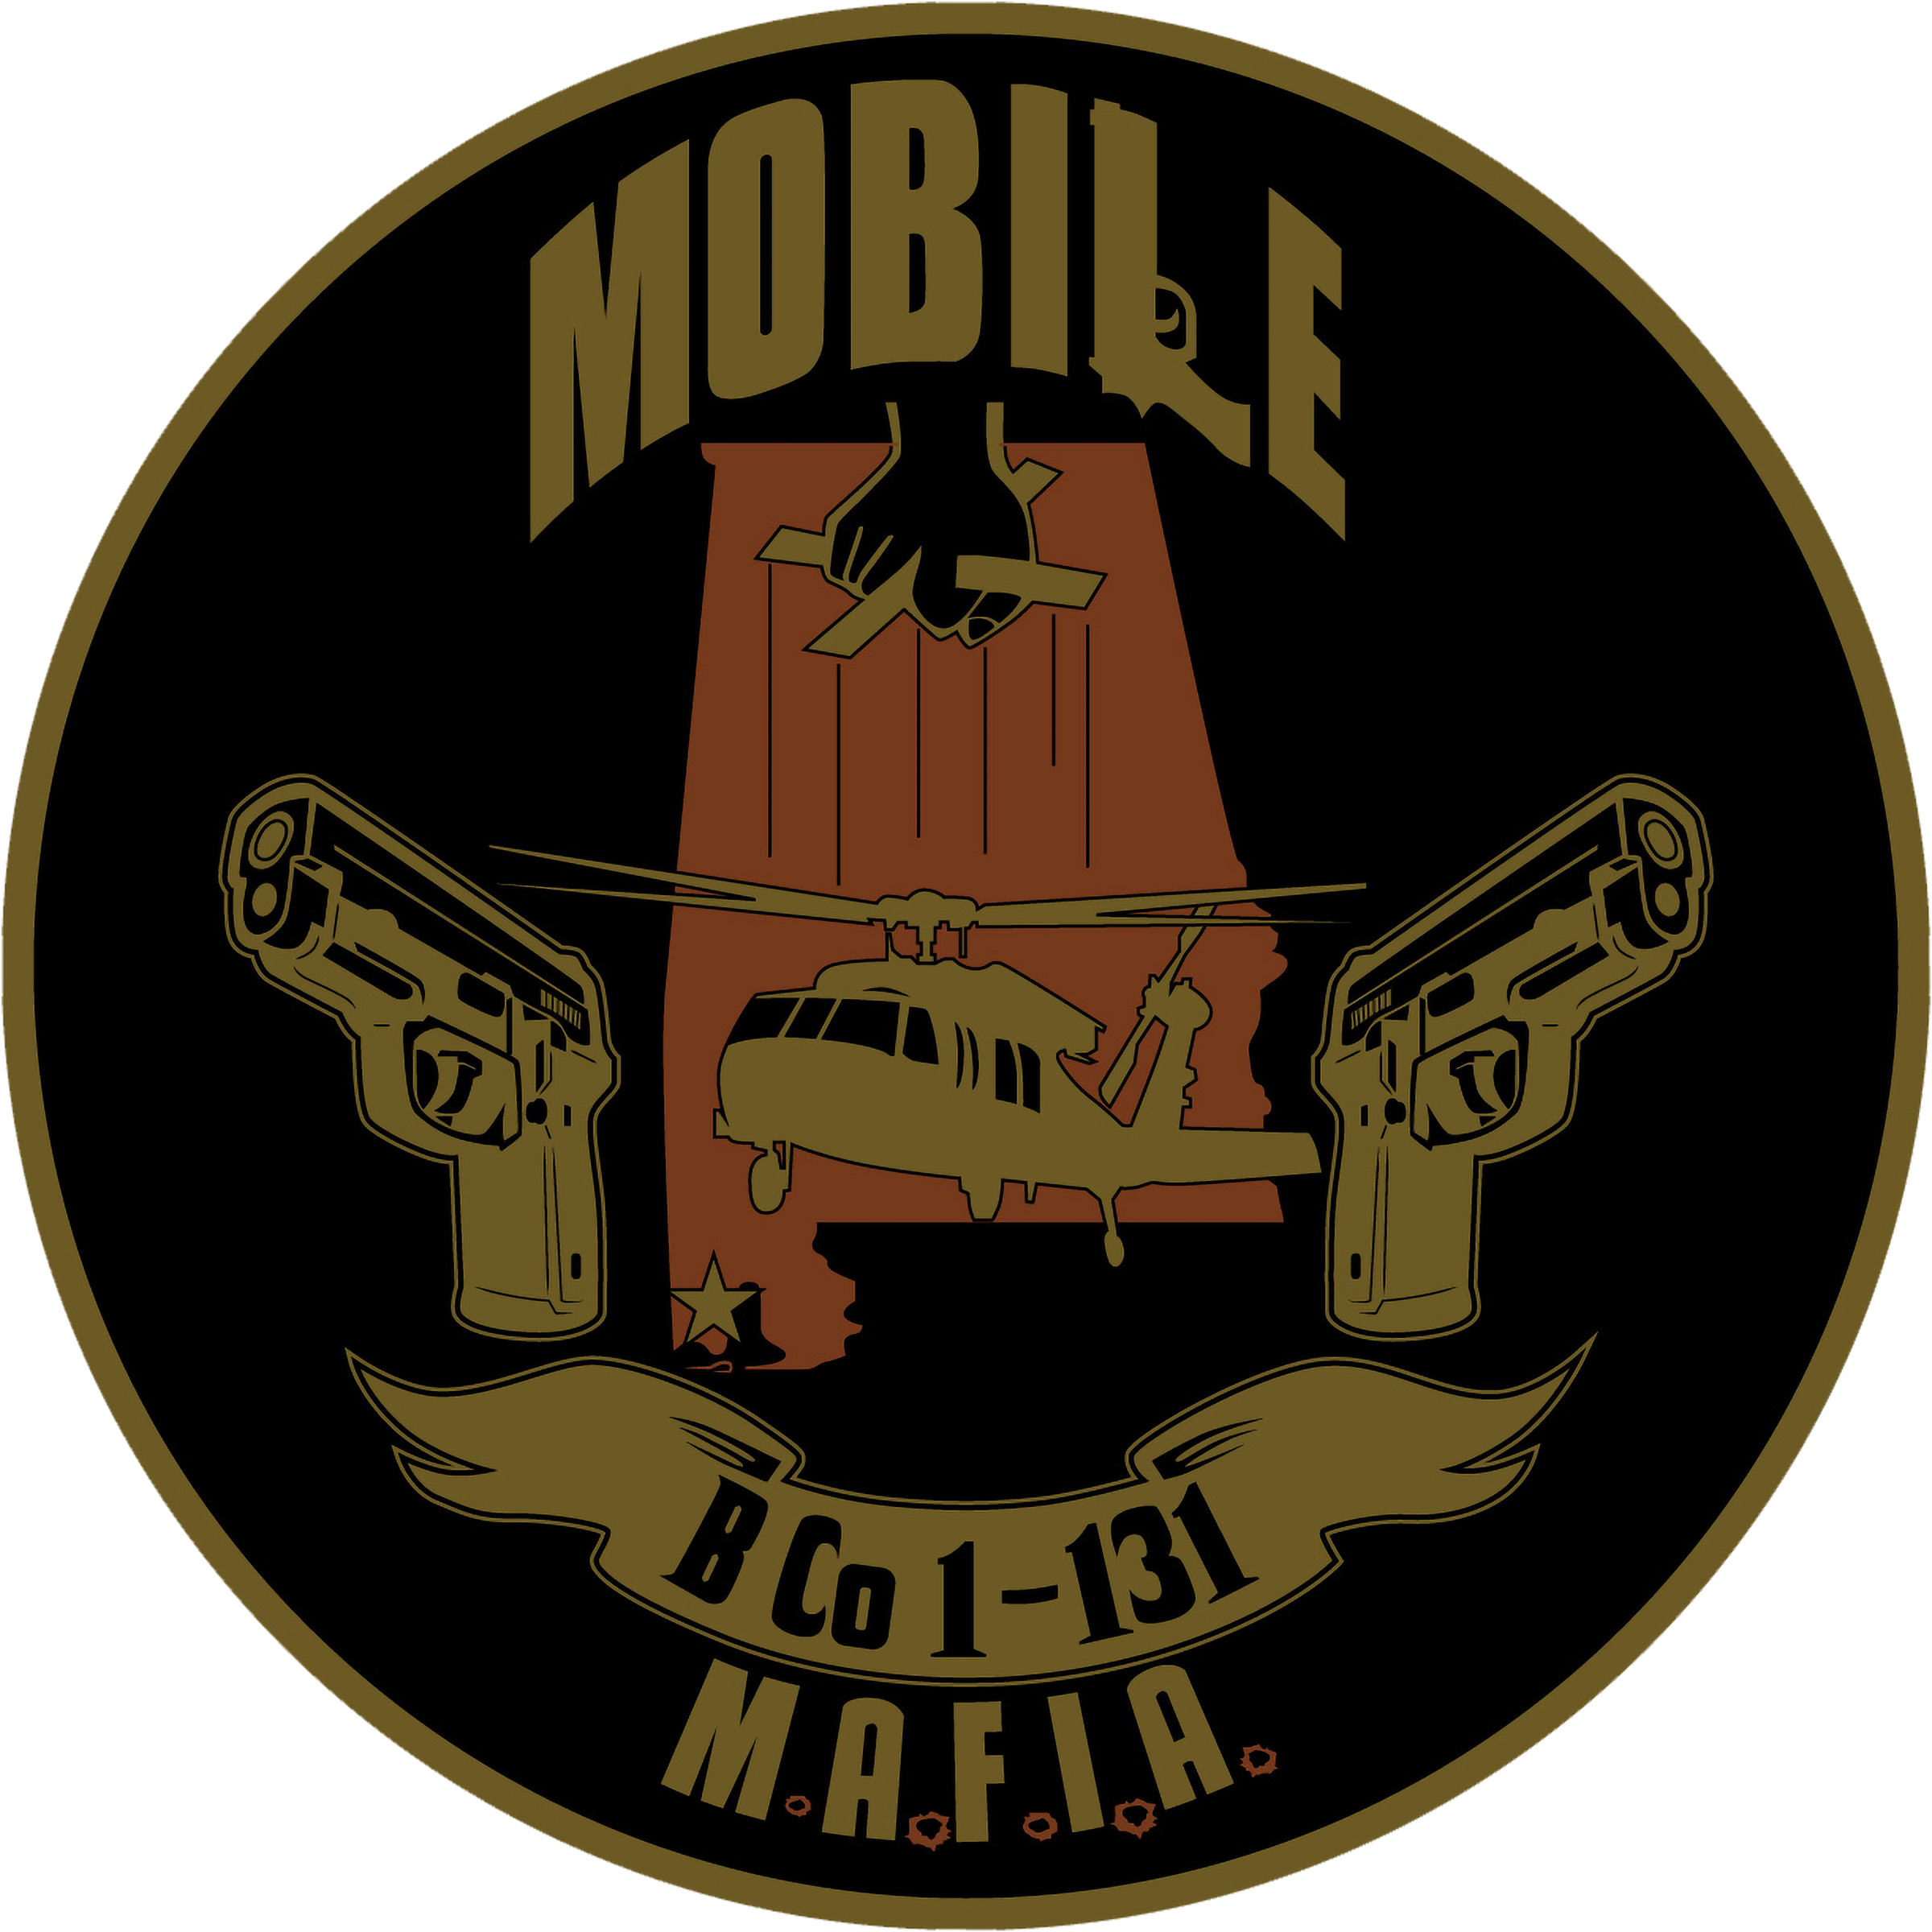 B Co, 1-131 AHB "Mobile Mafia"